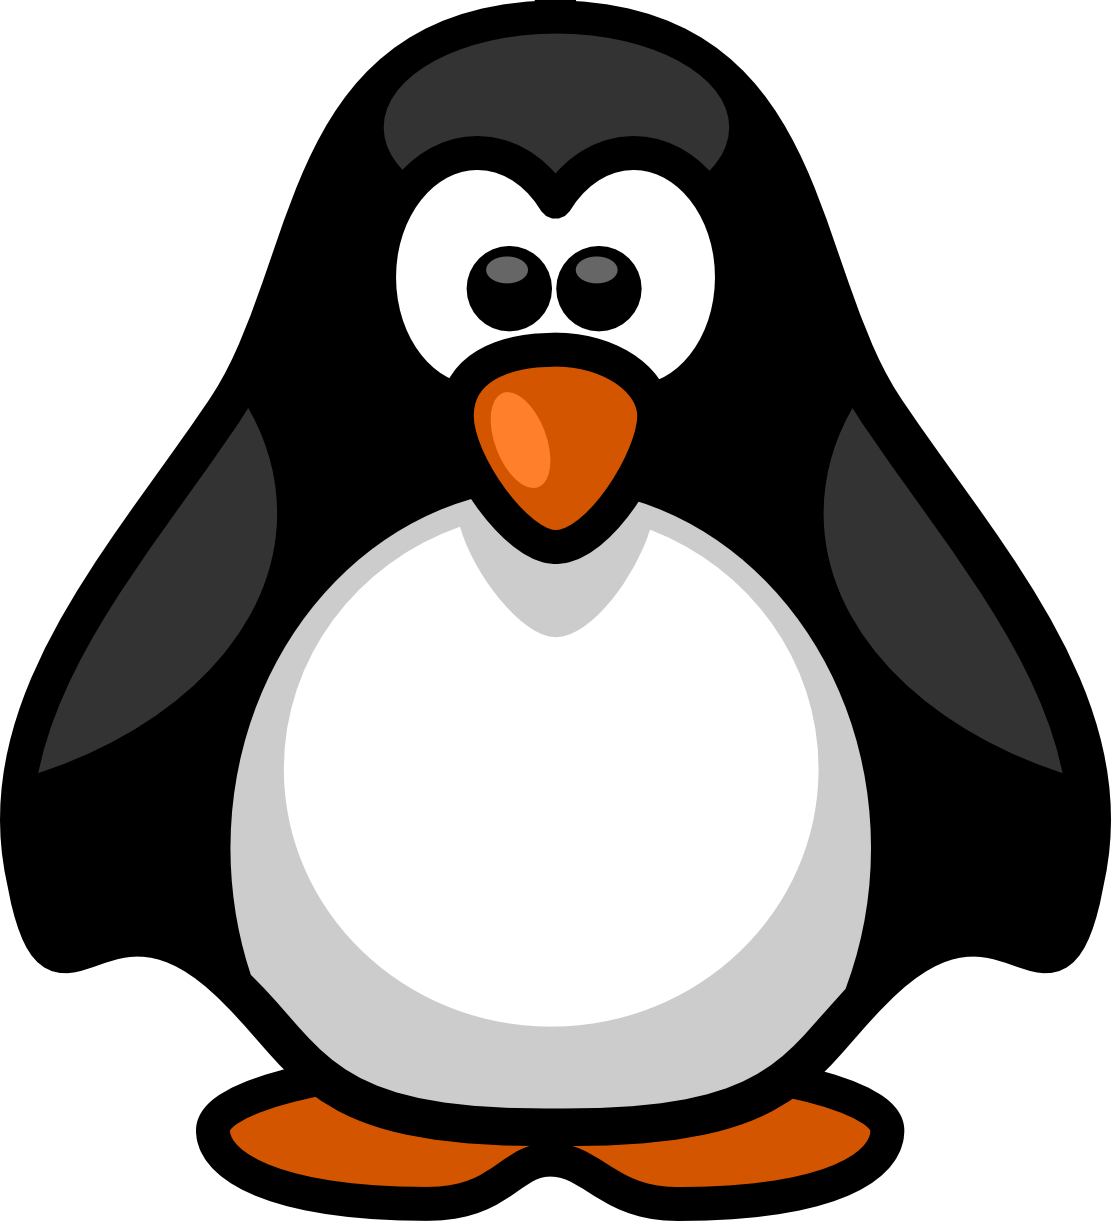 Penguins black and white